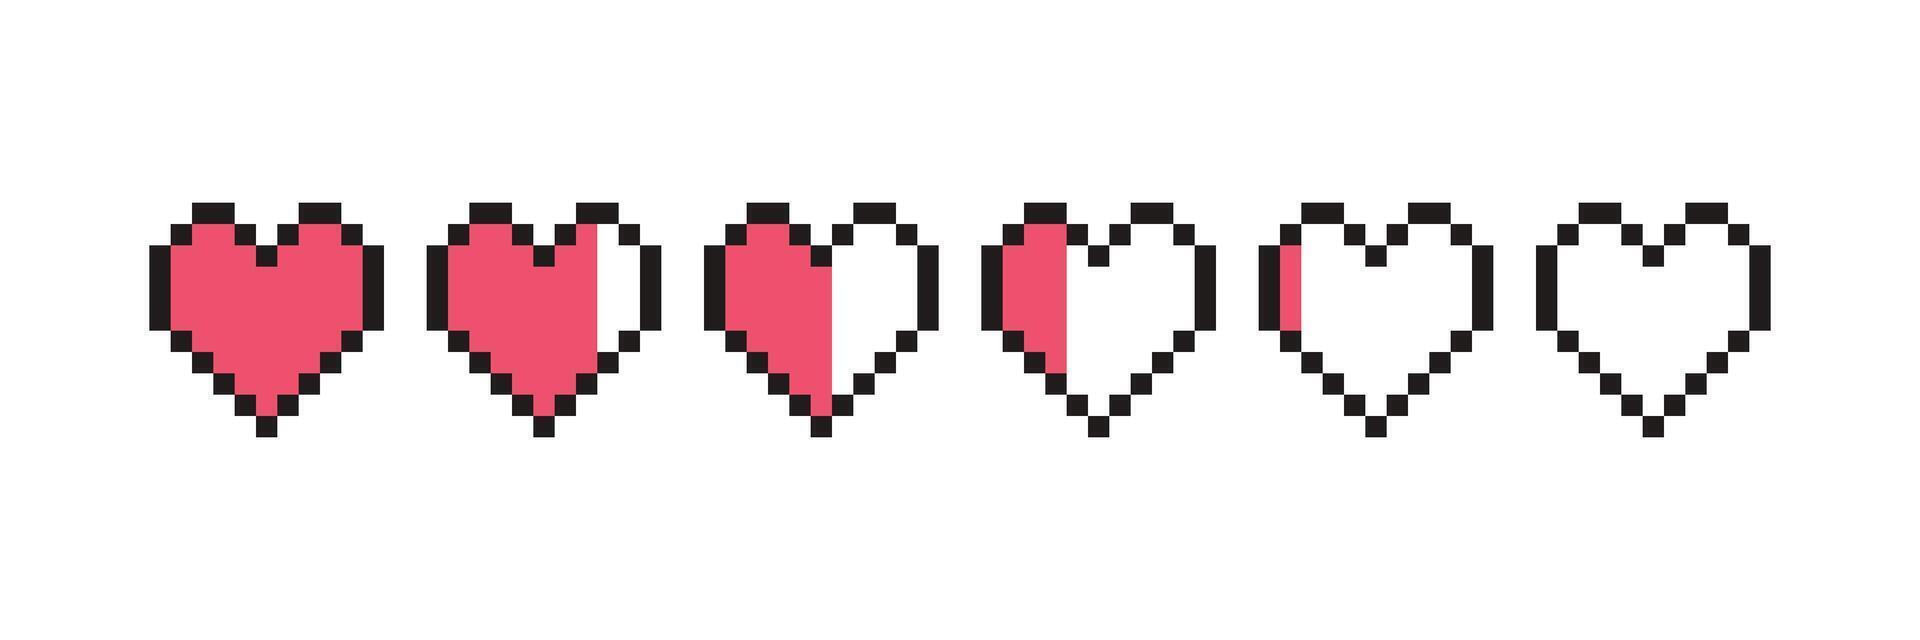 pixel spel liv bar. konst 8 bit hälsa hjärta bar. gaming kontroller, symboler uppsättning. vektor